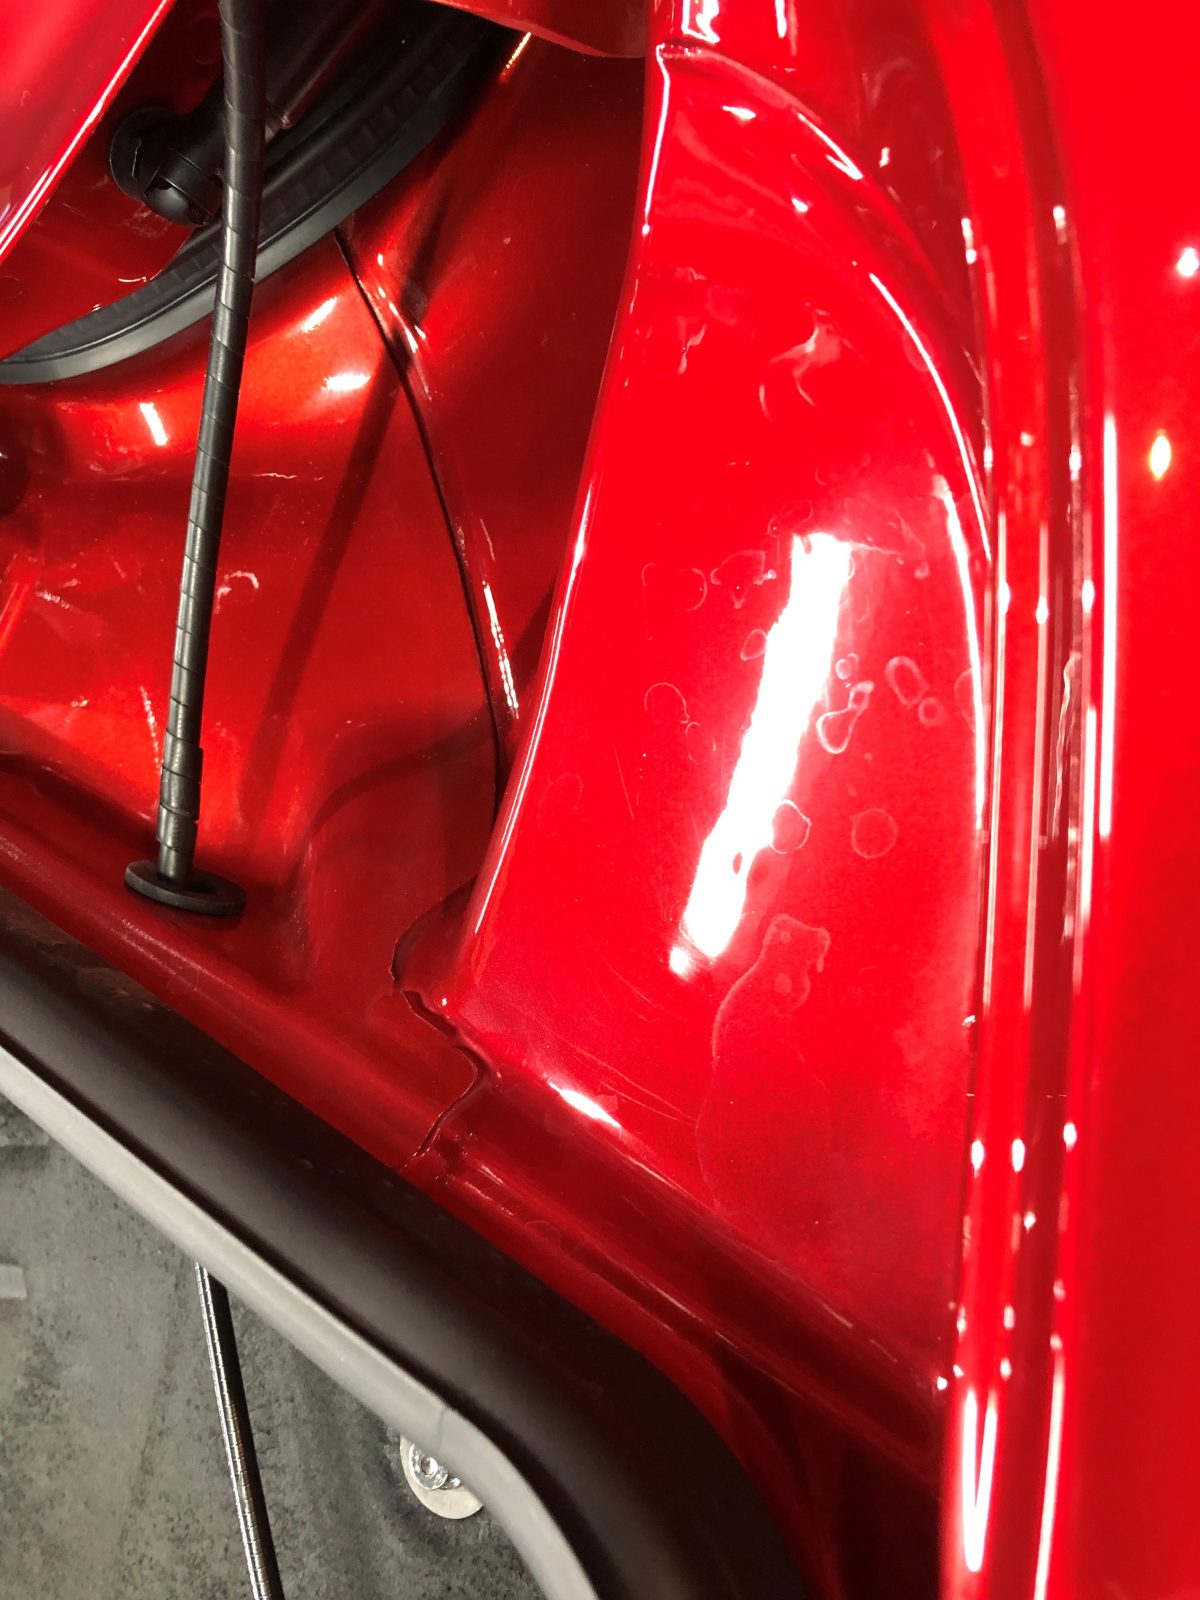 フェラーリ 812 gts 新車 ドア内 シミ